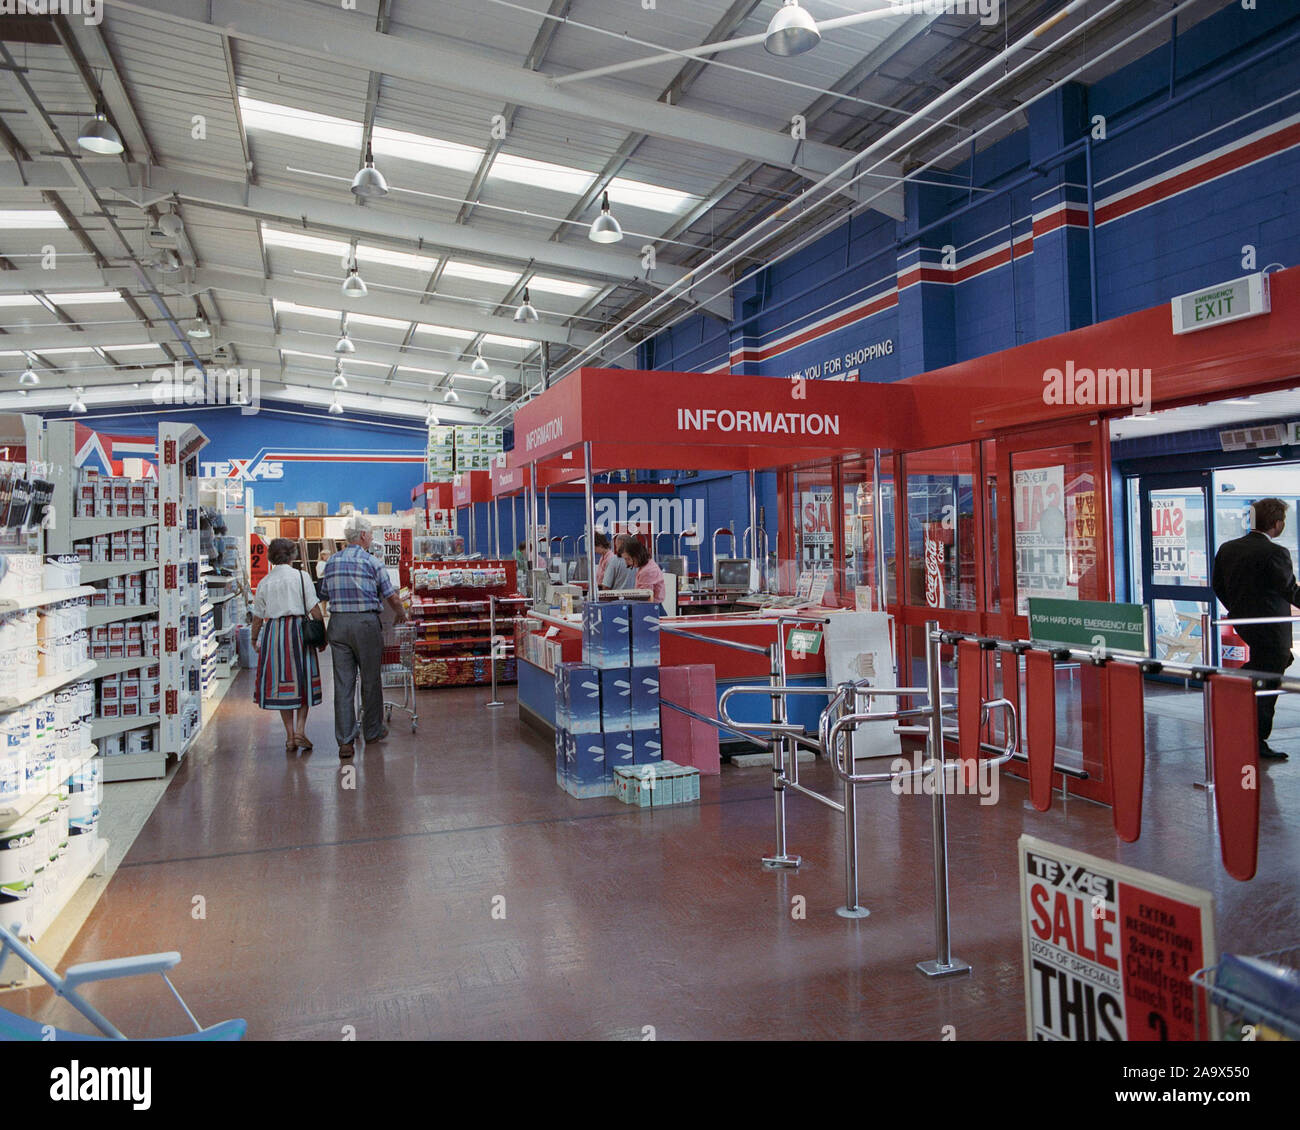 Texas 1990 magasin de bricolage, retail park Farnham Surrey, Angleterre du Sud-Est Banque D'Images